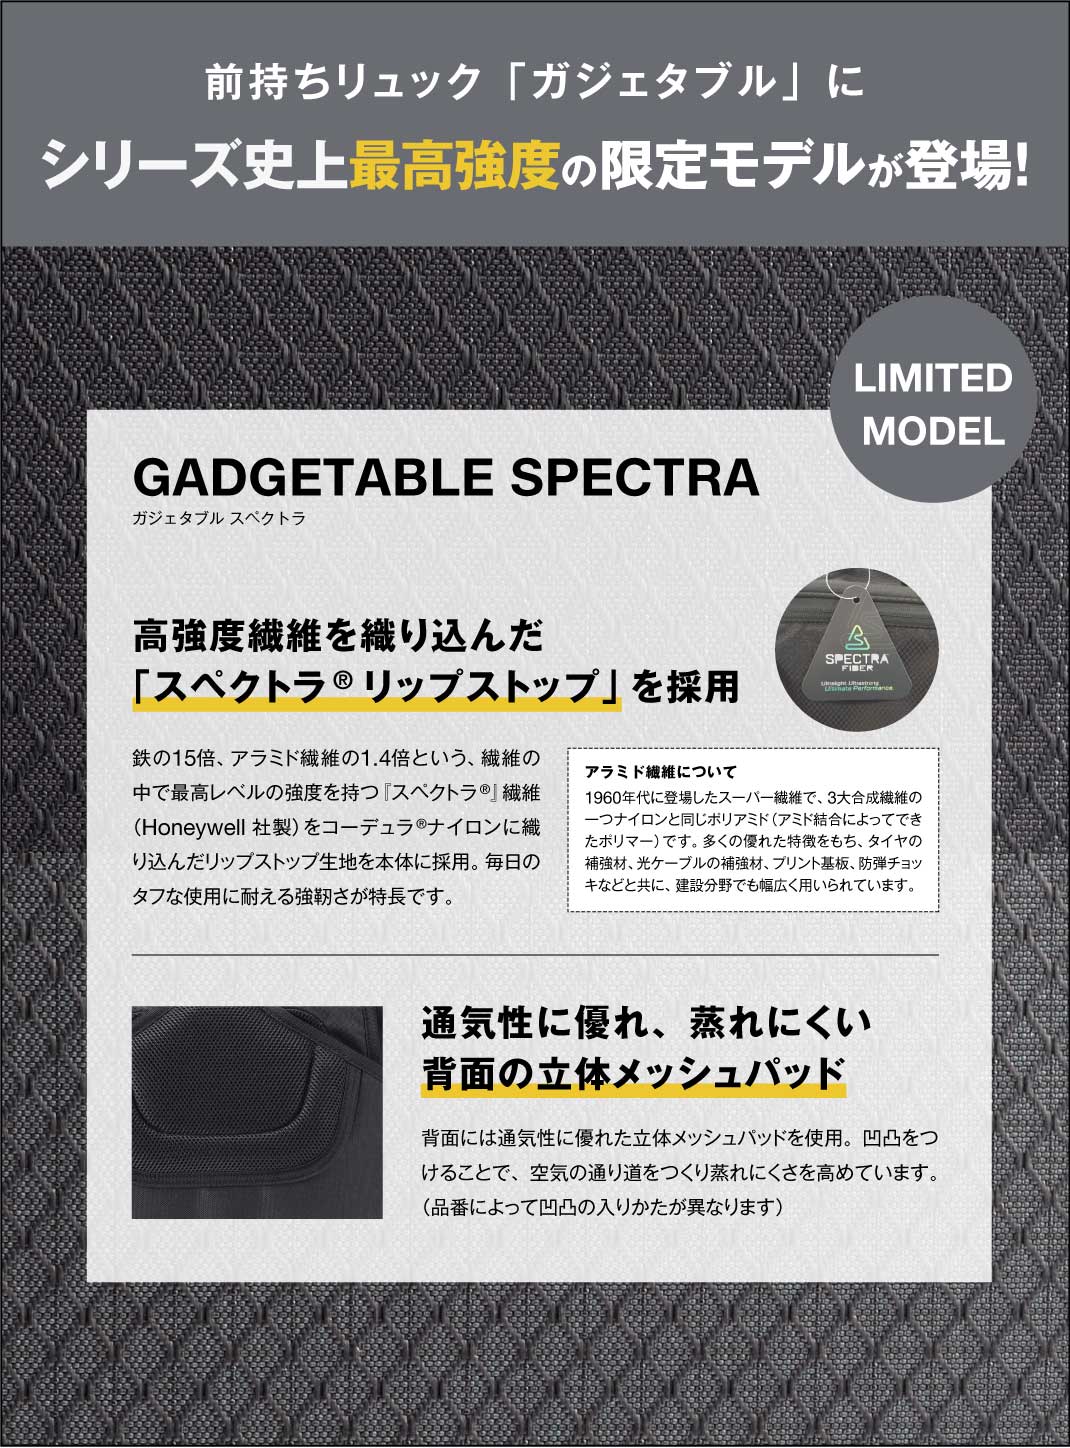 ガジェタブルスペクトラ / ace. GENE LABEL  シリーズ史上最高強度の限定モデルが登場！